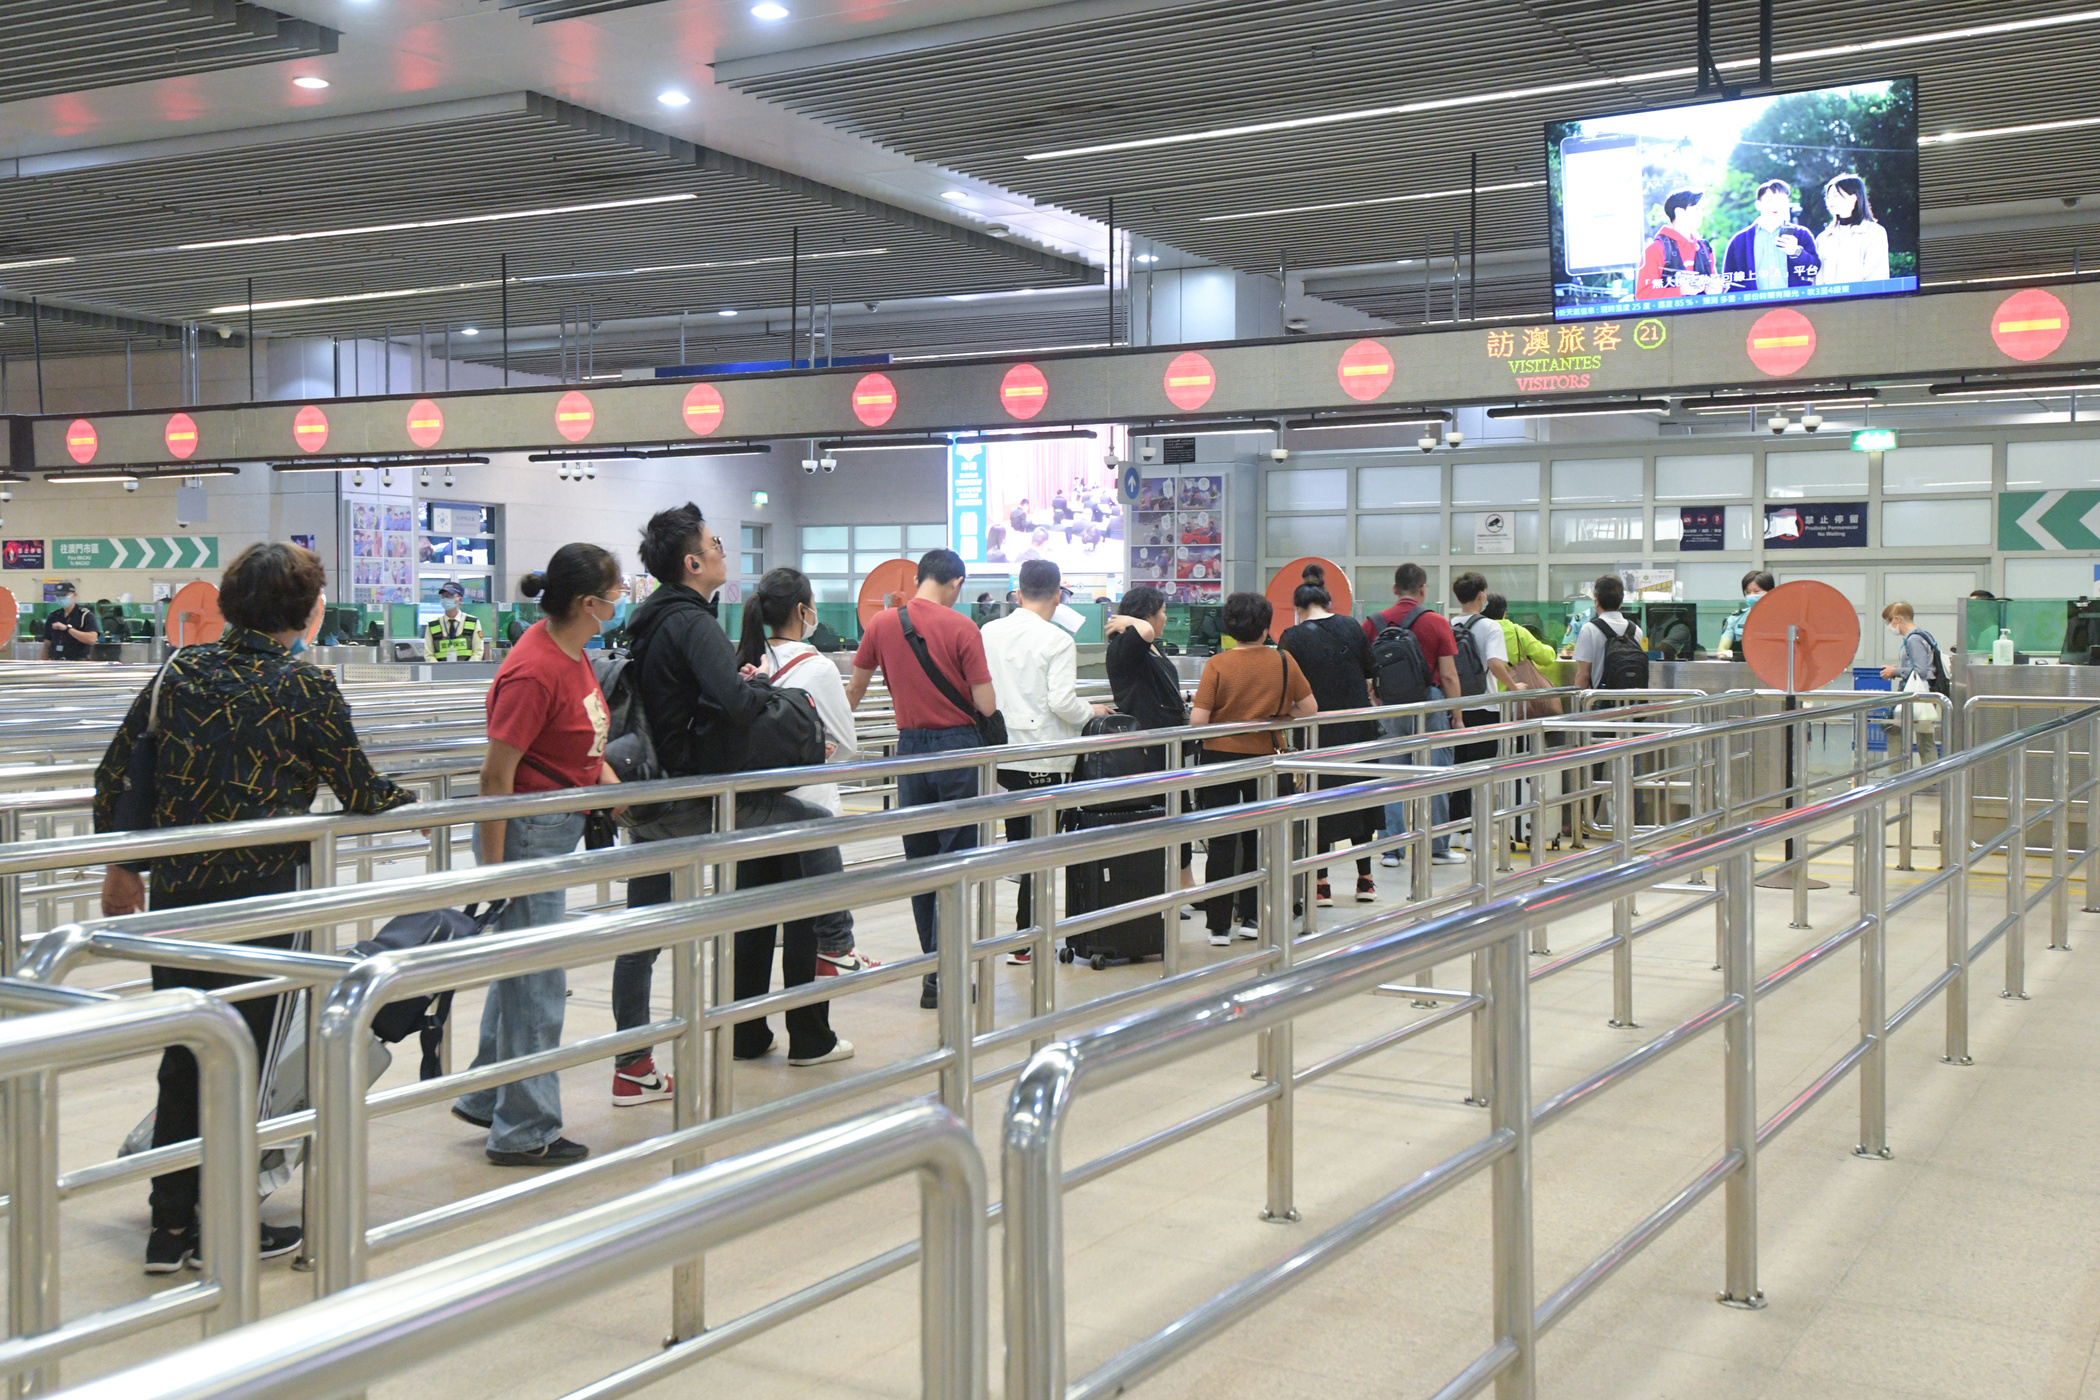 Macau logs 492k tourist arrivals in Labour Day break period